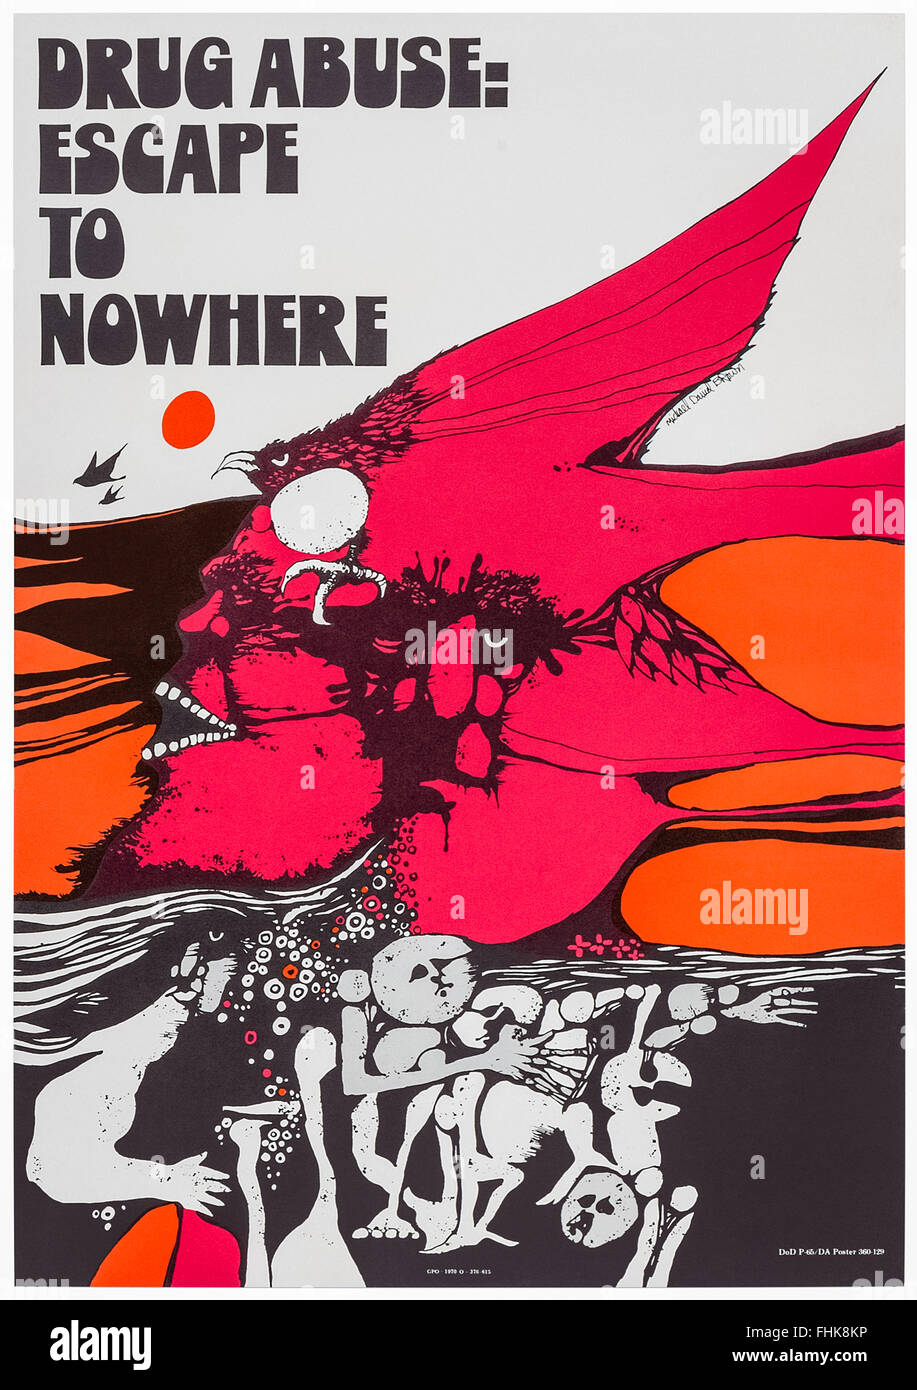 L'abus de drogue : Escape to Nowhere' US anti-drogues affiche de campagne 1970 conçu par Michael David Brown. Banque D'Images